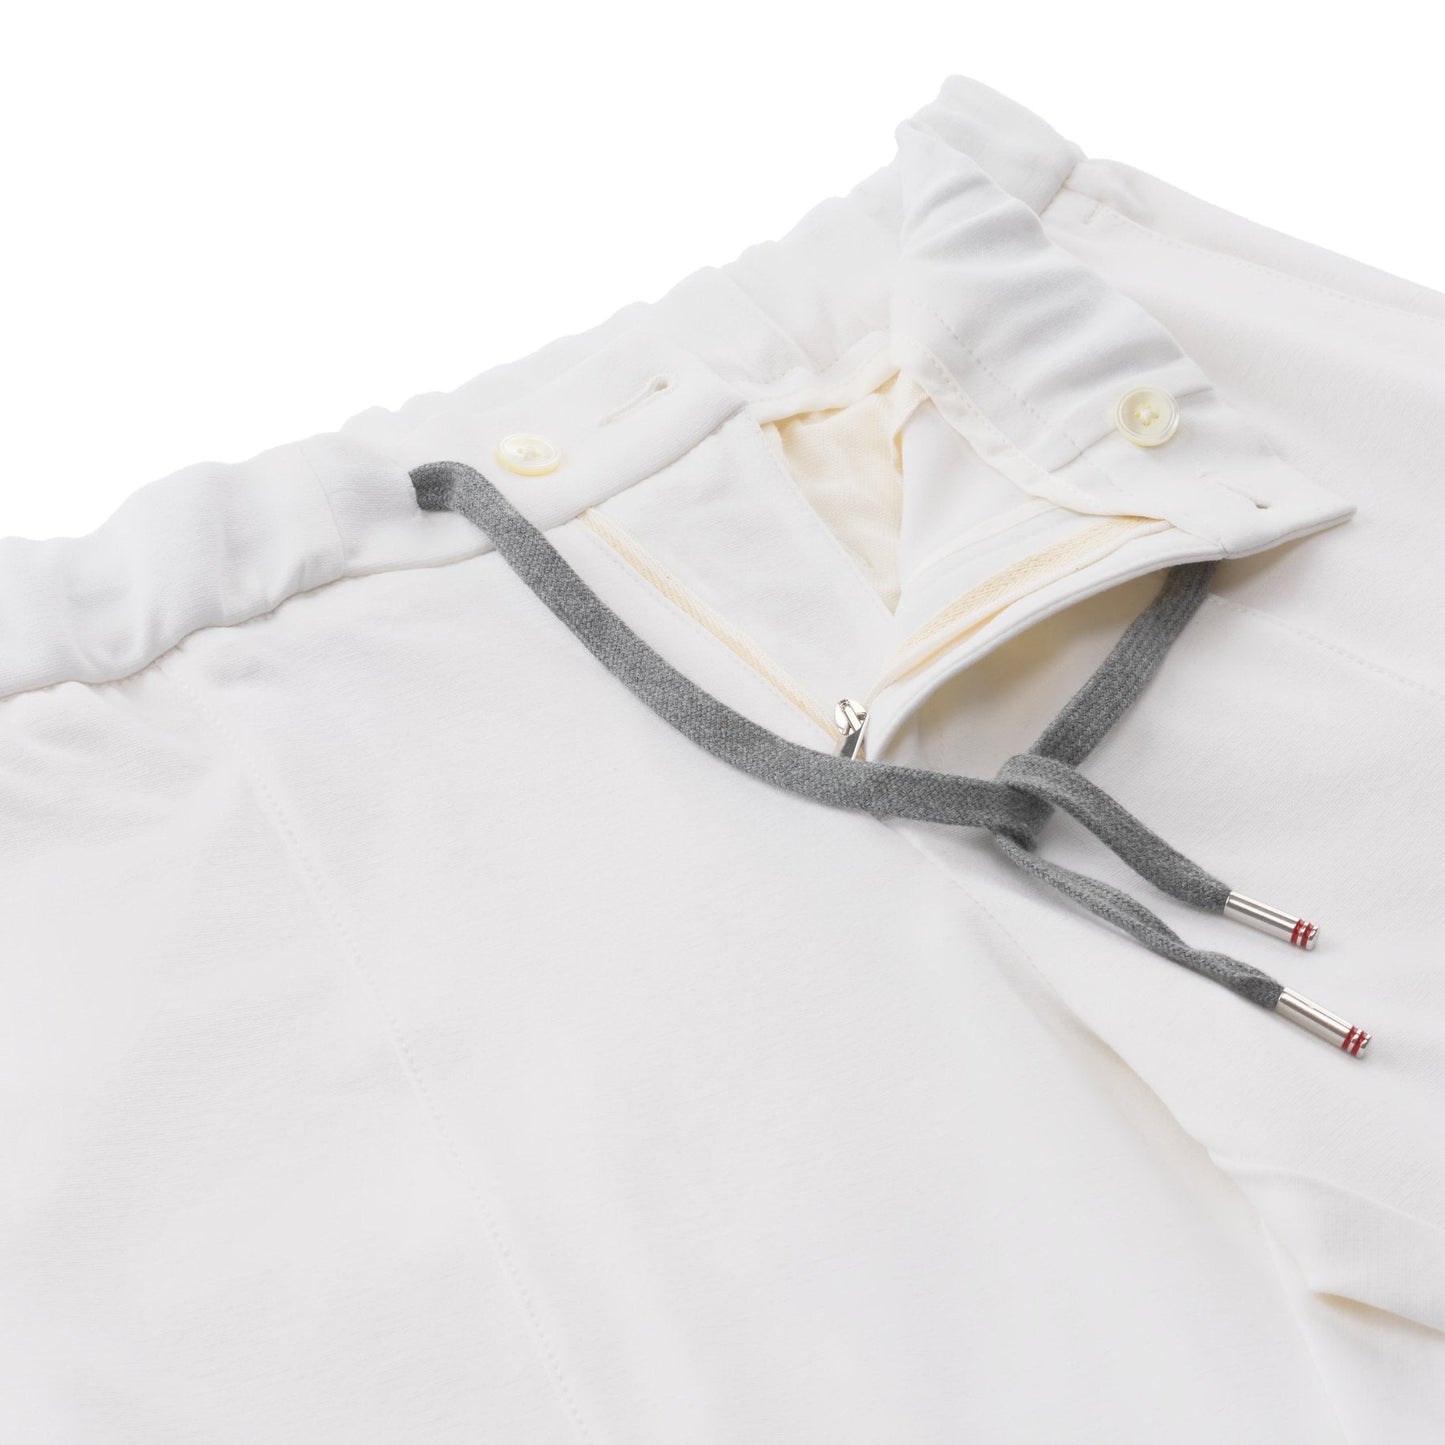 Marco Pescarolo Freetime Drawstring Trousers in White - SARTALE